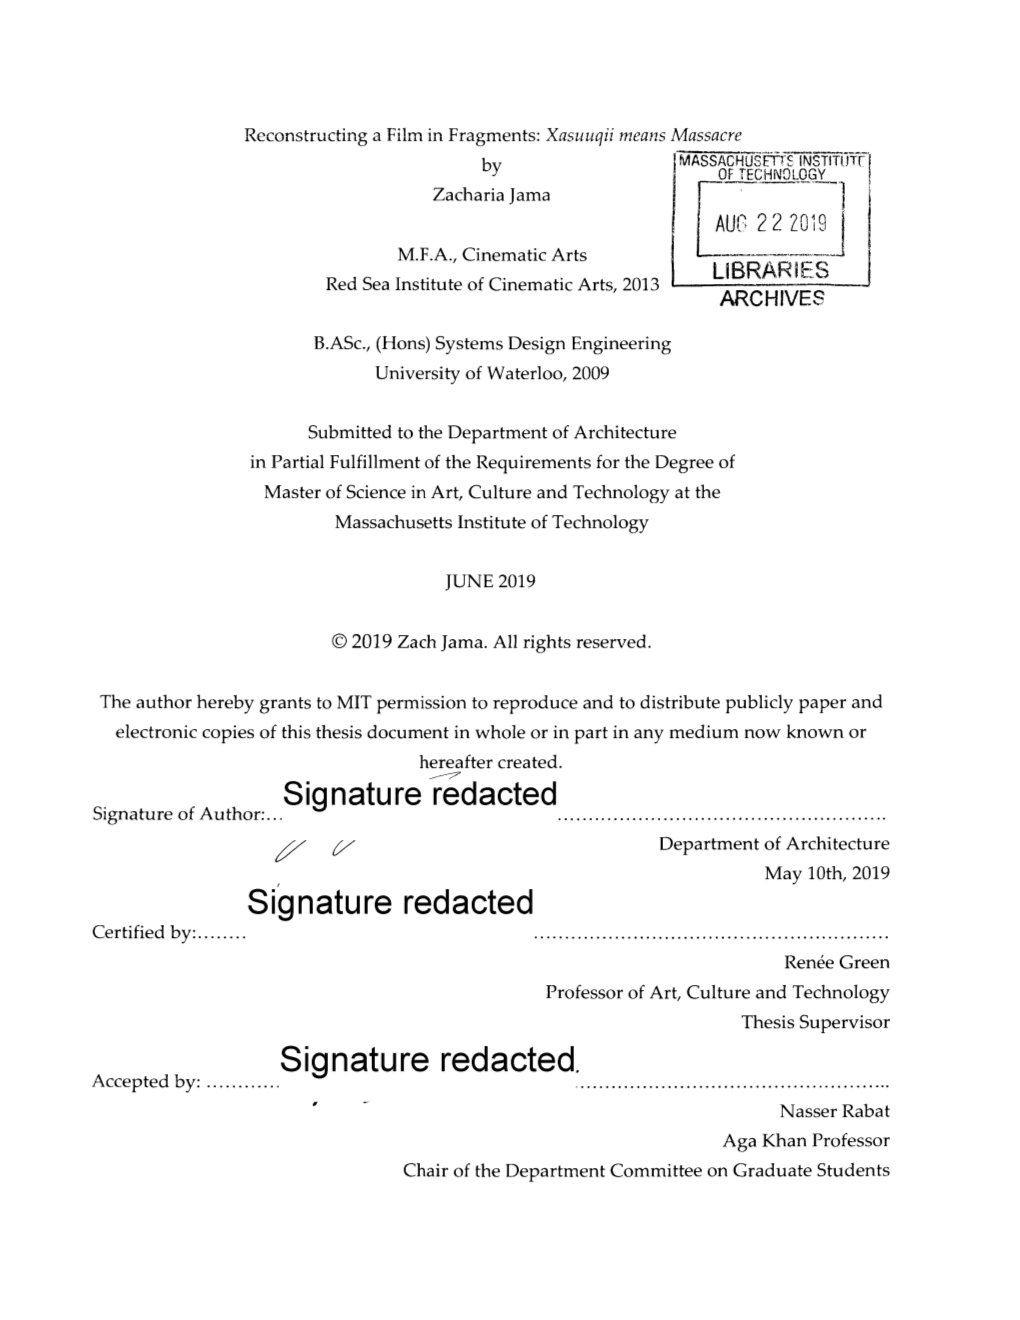 Signature Redacted Signature Or Author